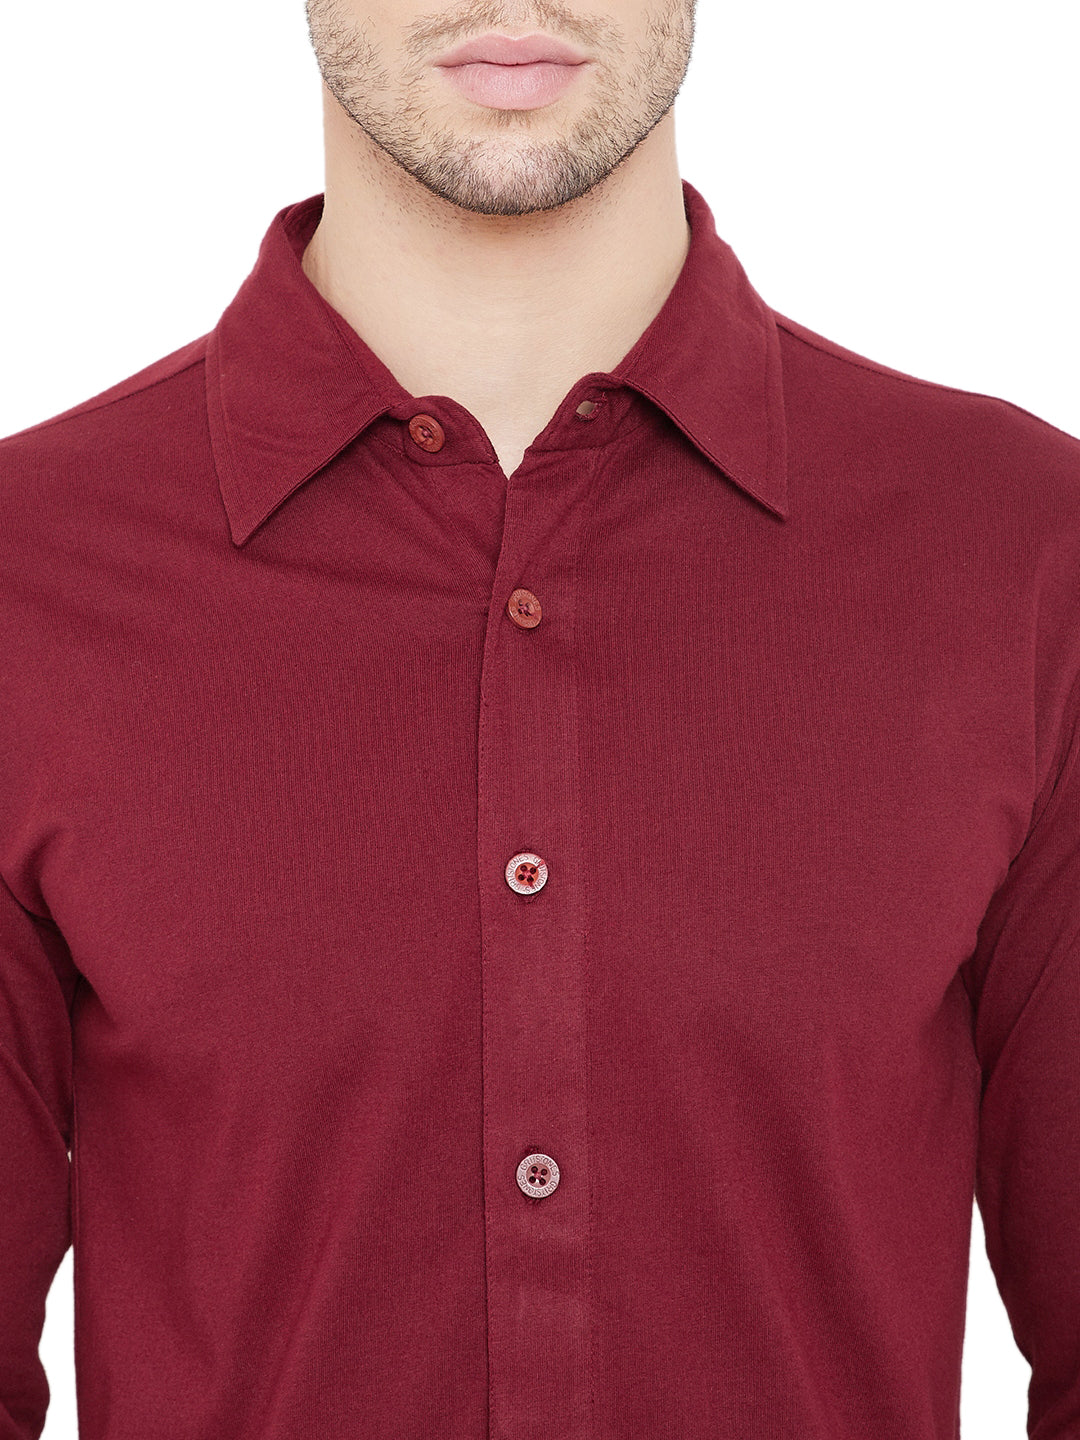 Maroon Men Full Sleeves Regular Collar Shirt